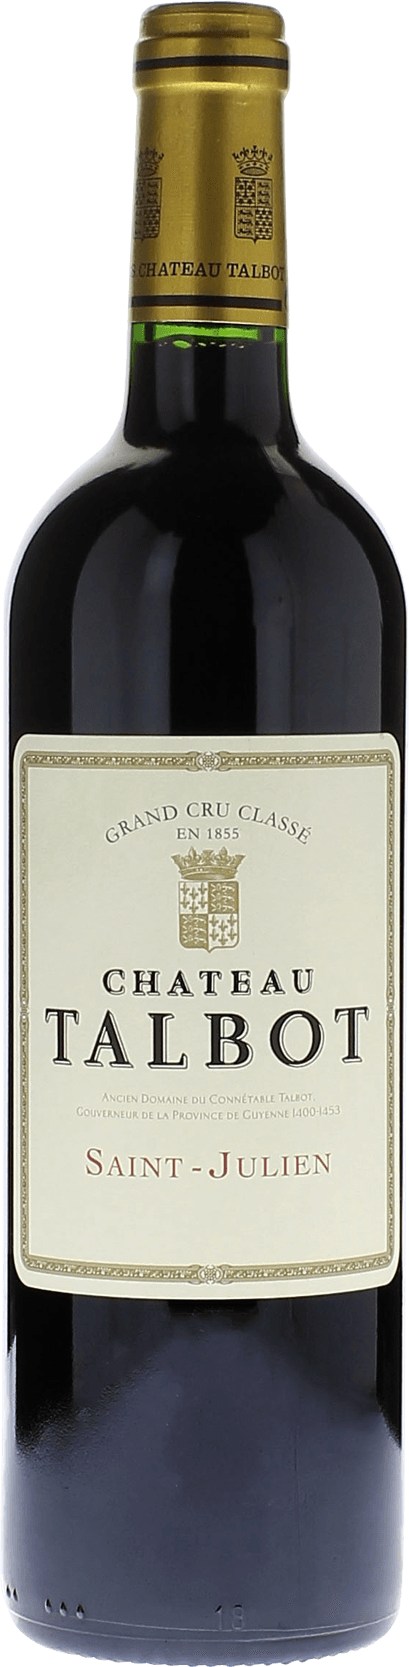 Talbot 2017 4me Grand cru class Saint-Julien, Bordeaux rouge